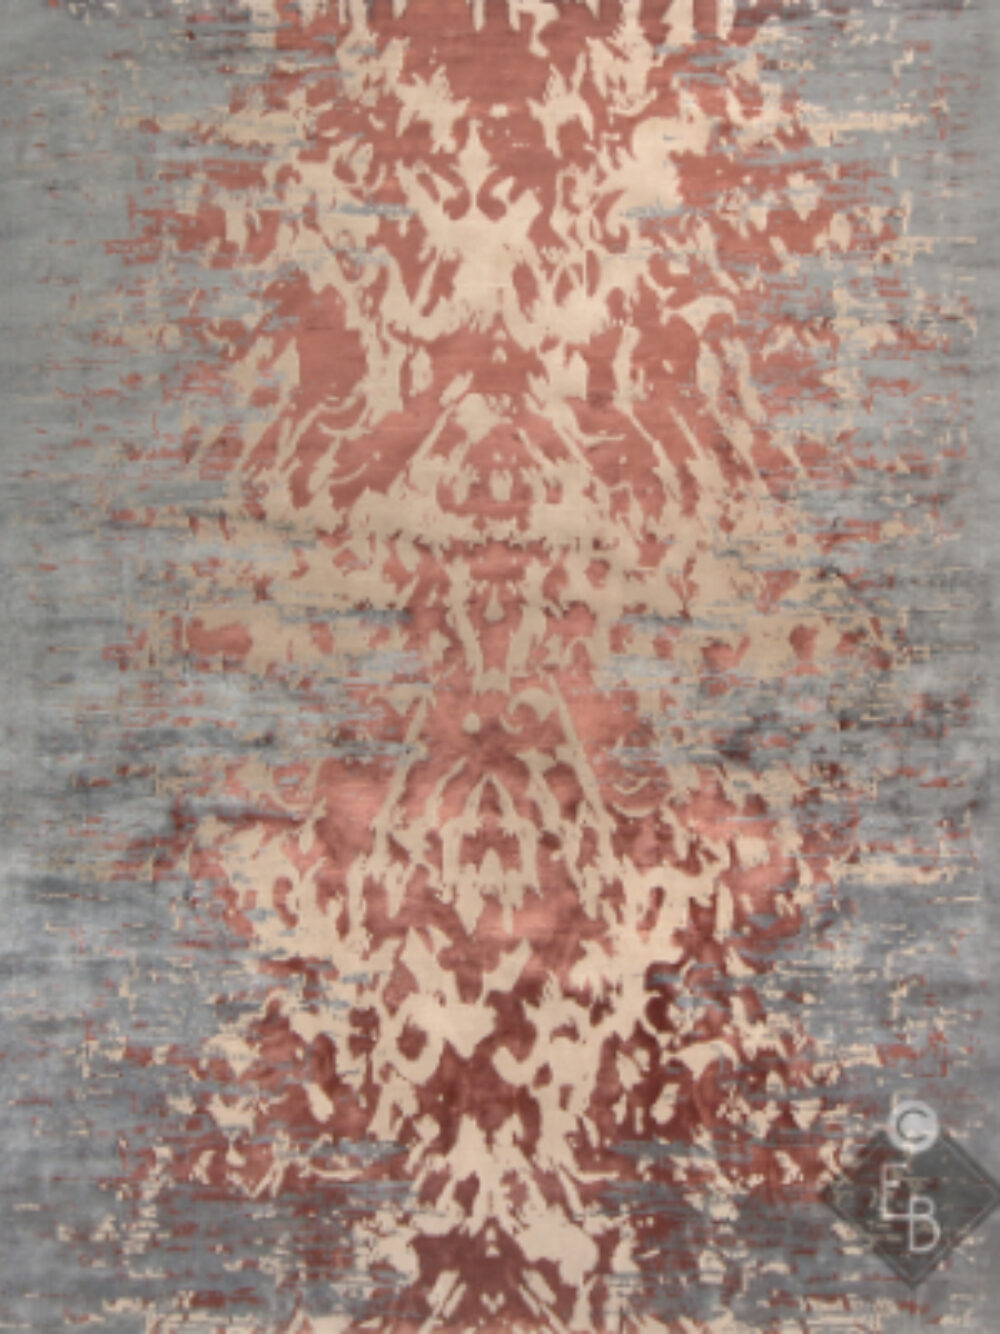 Diseño de lujo y alfombras de alta gama hechas a medida • Abaya